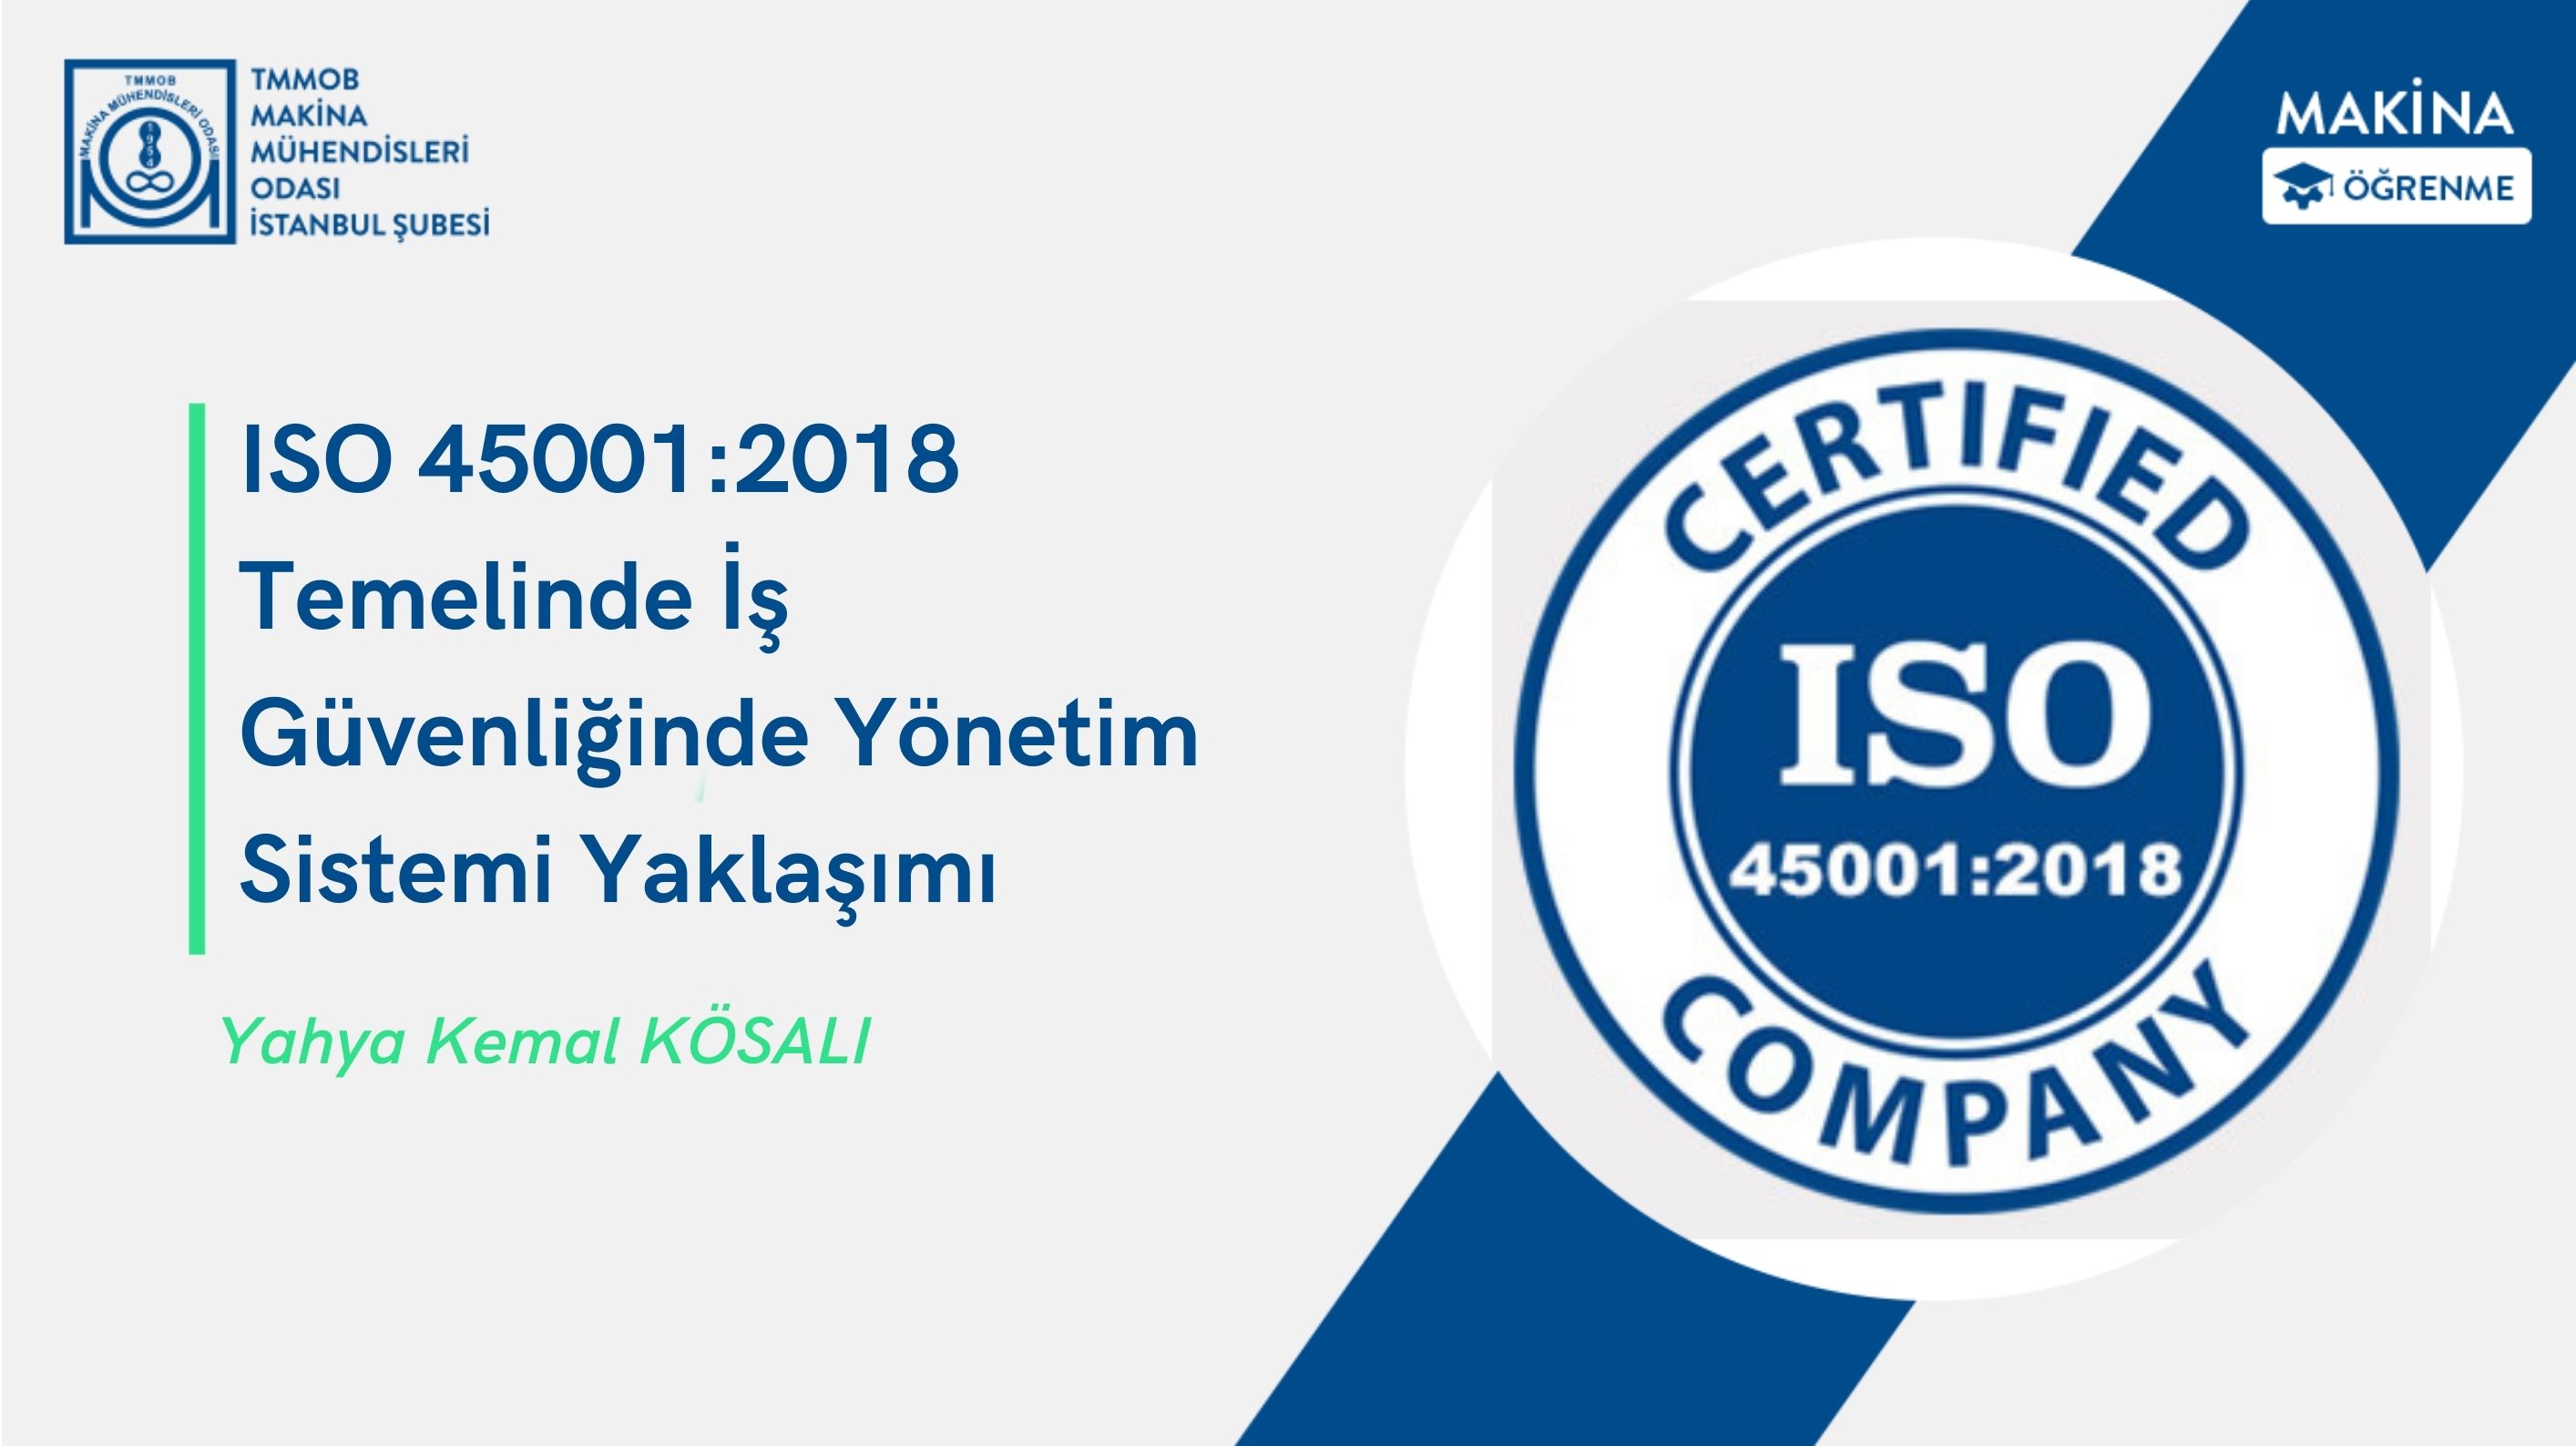 ISO 45001:2018 Temelinde İş Güvenliğinde Yönetim Sistemi Yaklaşımı